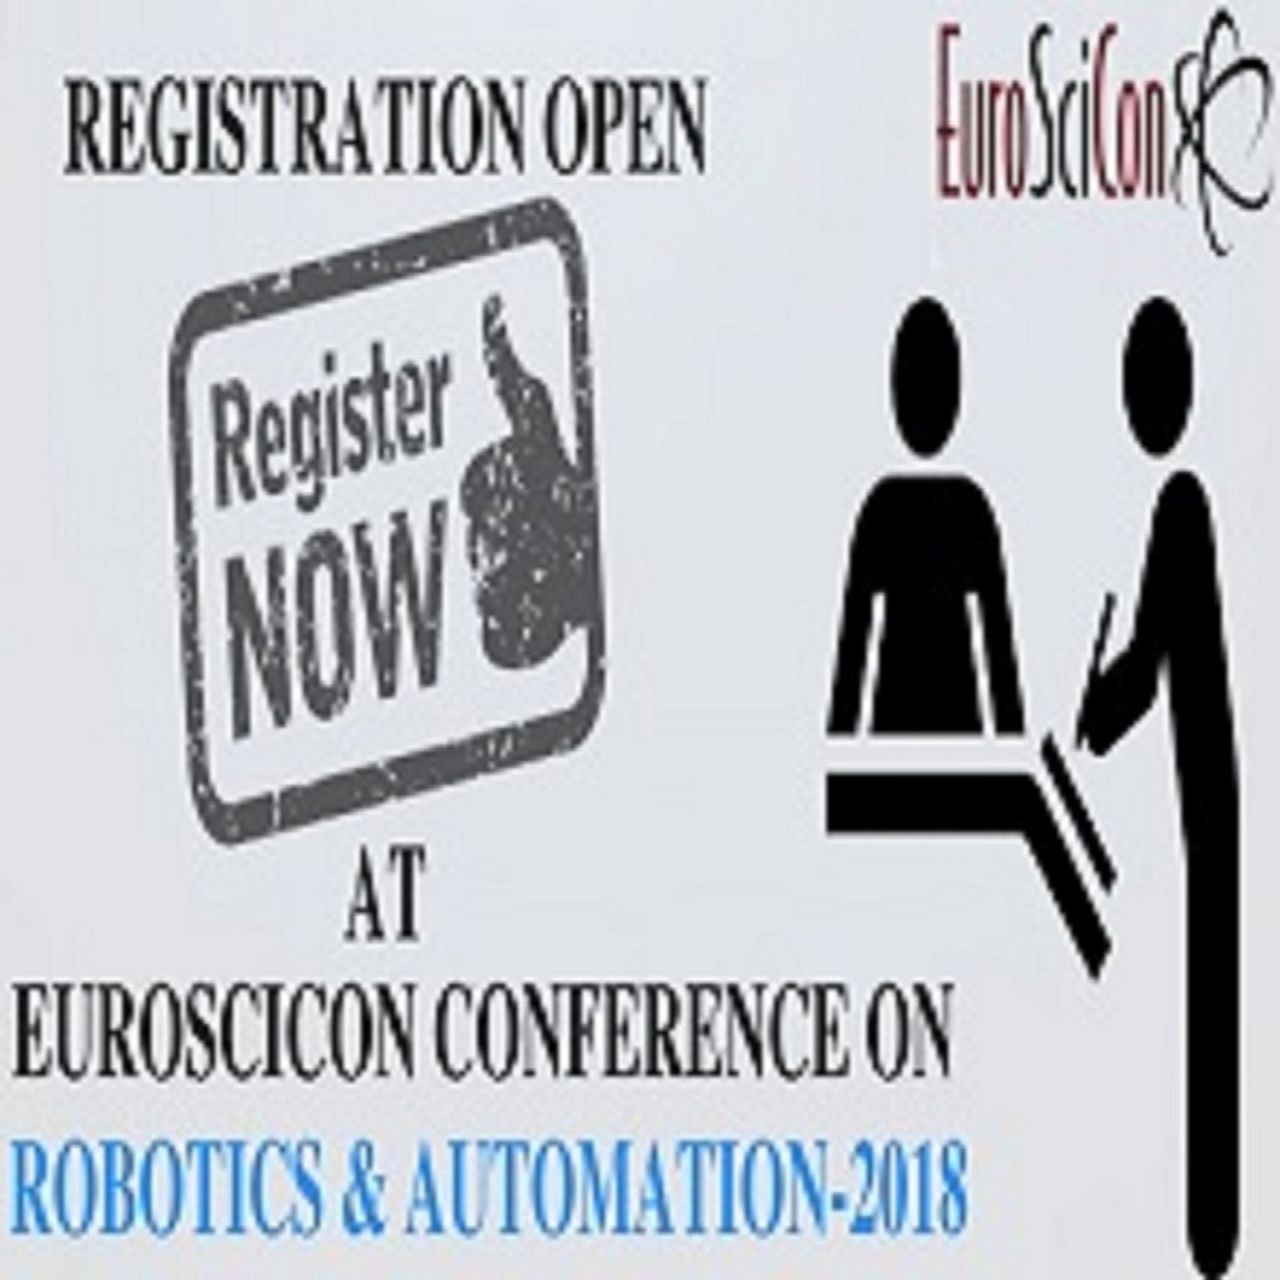 Robotics & Automation Conferences